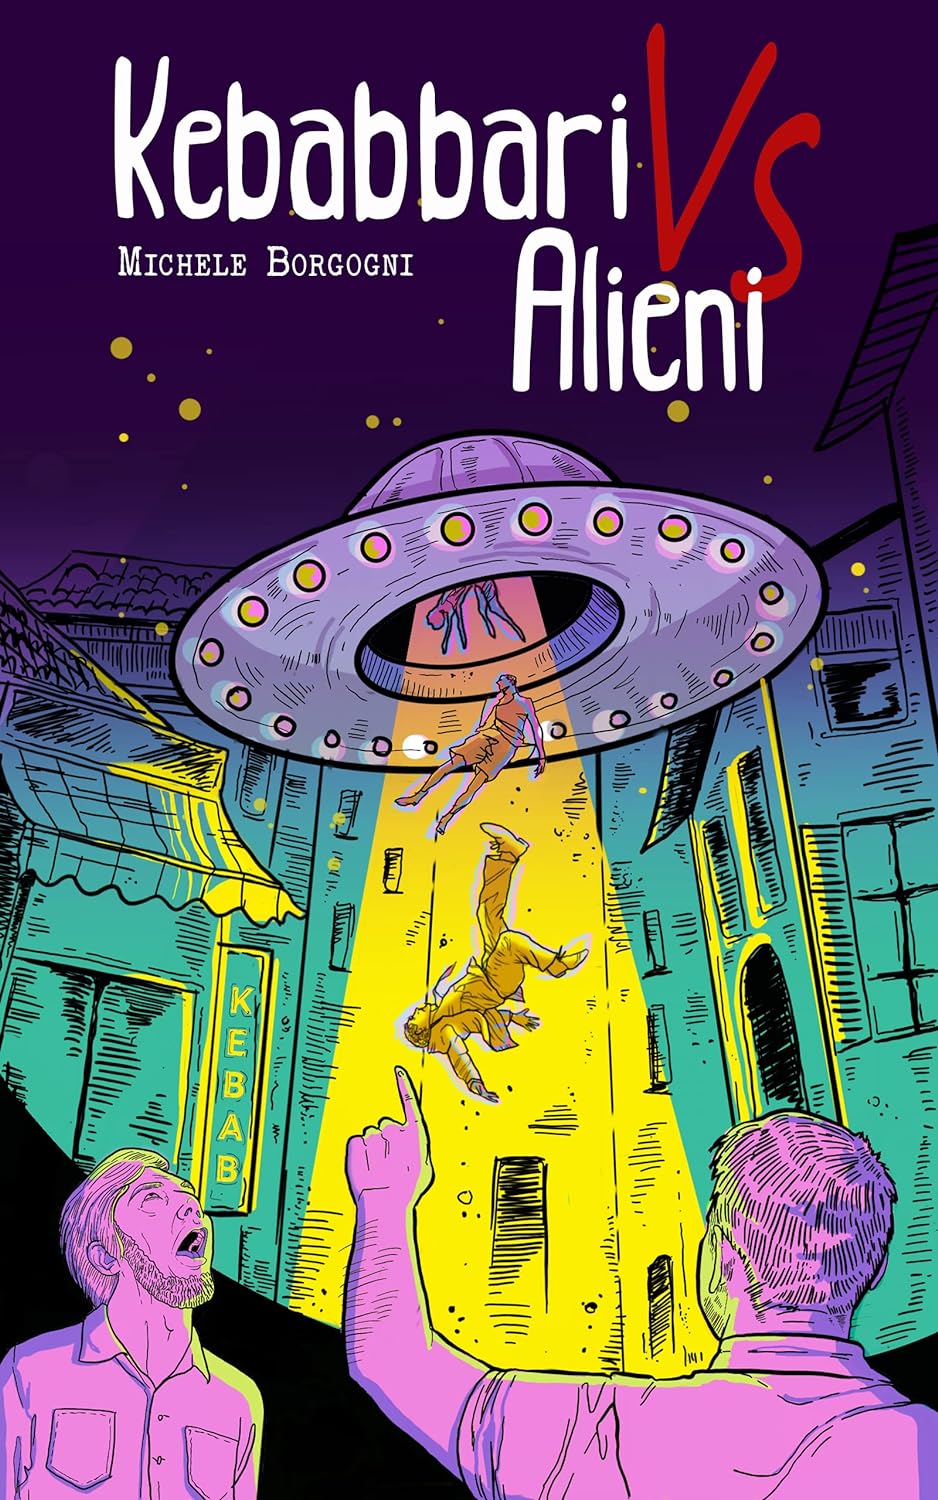 Michele Borgogni: Kebabbari vs Alieni (EBook, Italiano language, Autopubblicazione)